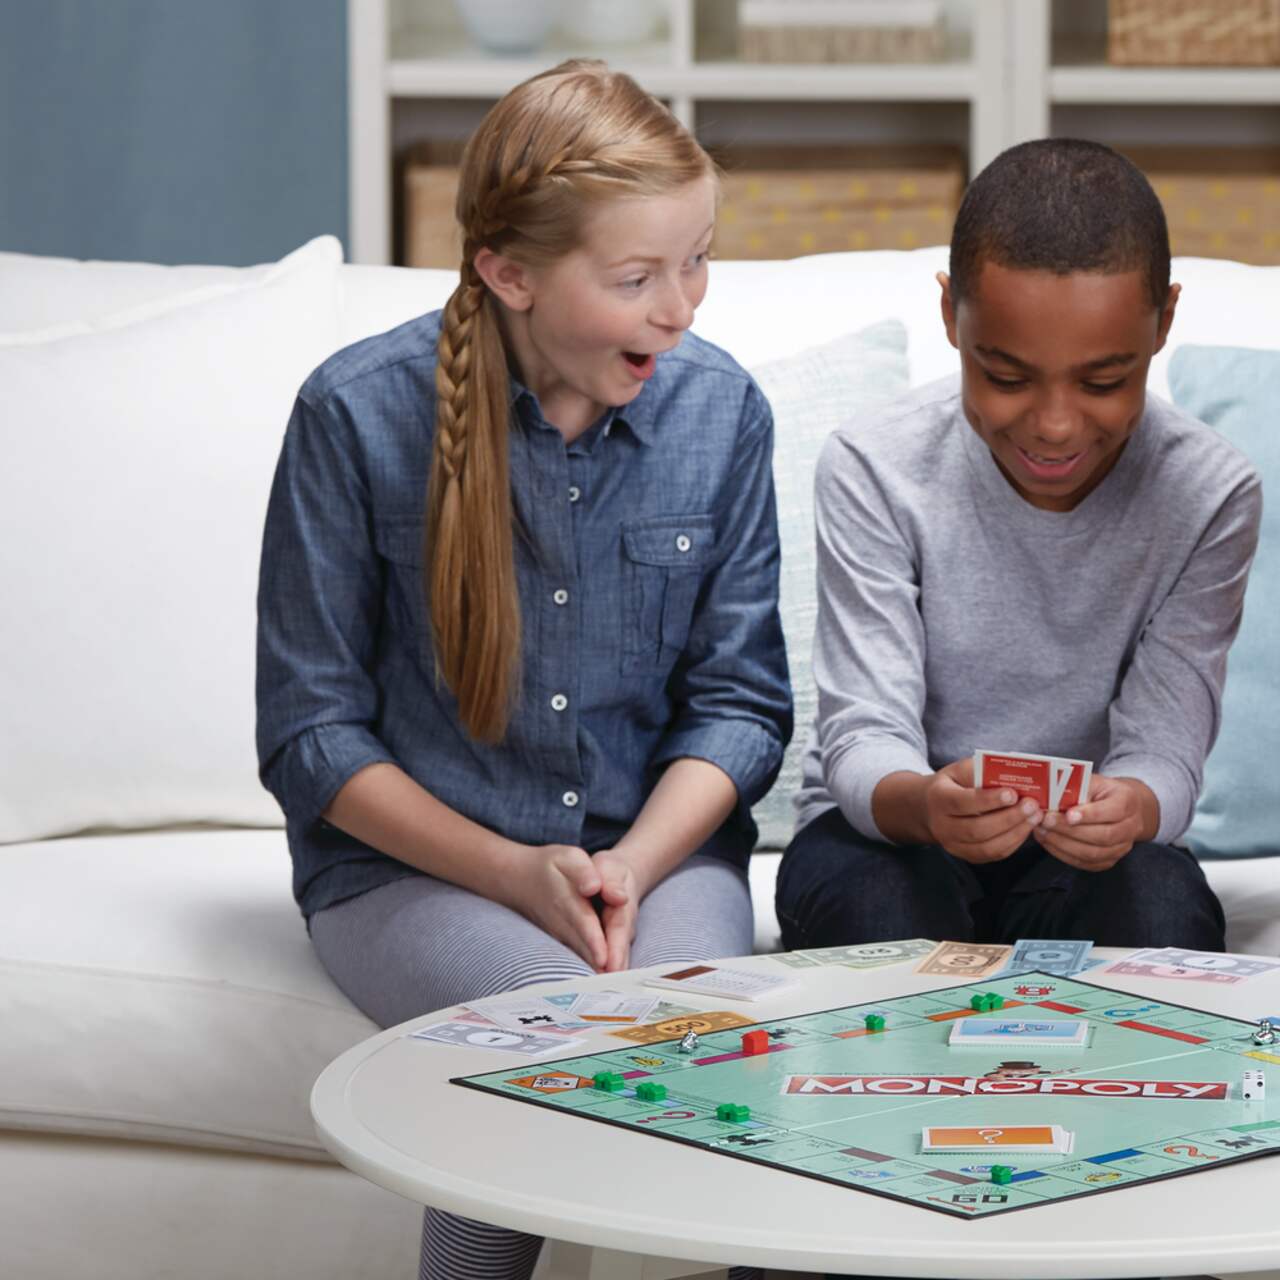 Hasbro Monopoly Roblox - Bilingual, Board Games -  Canada